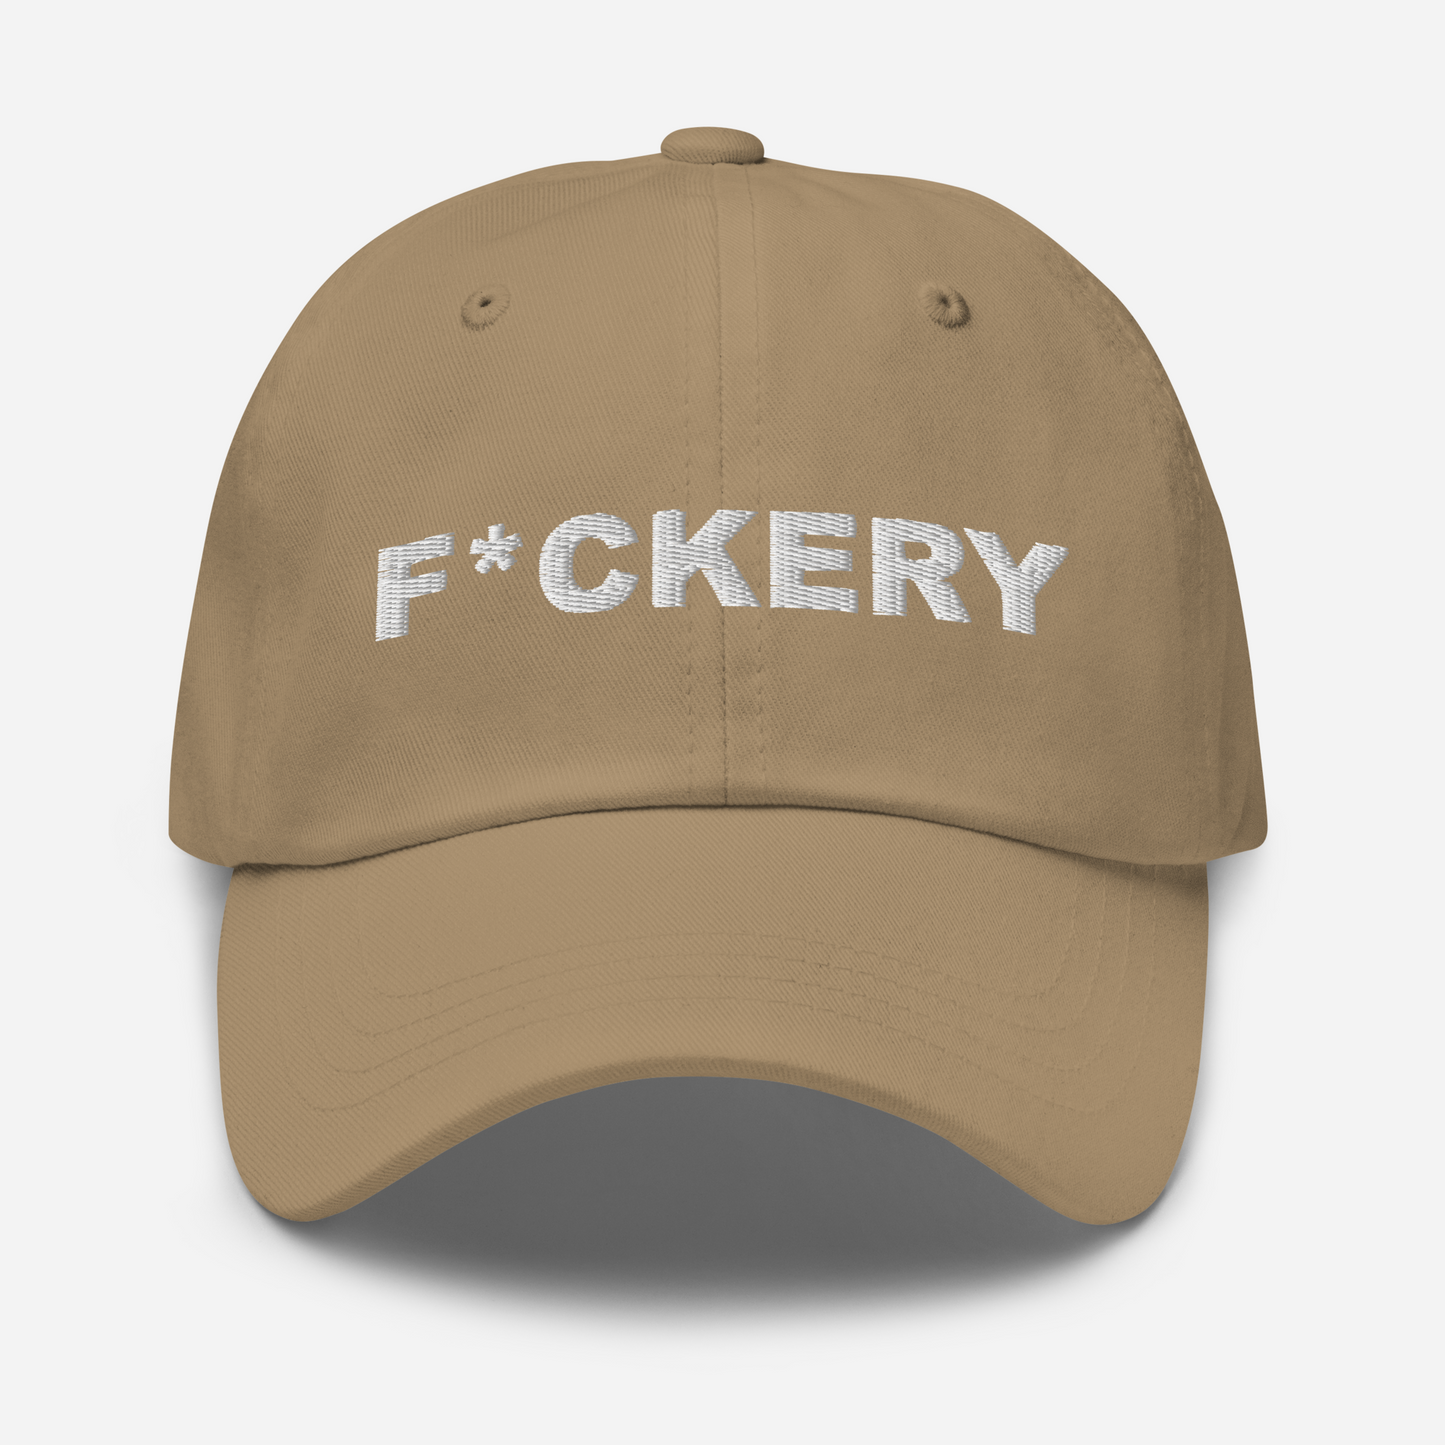 F*ckery Dad hat